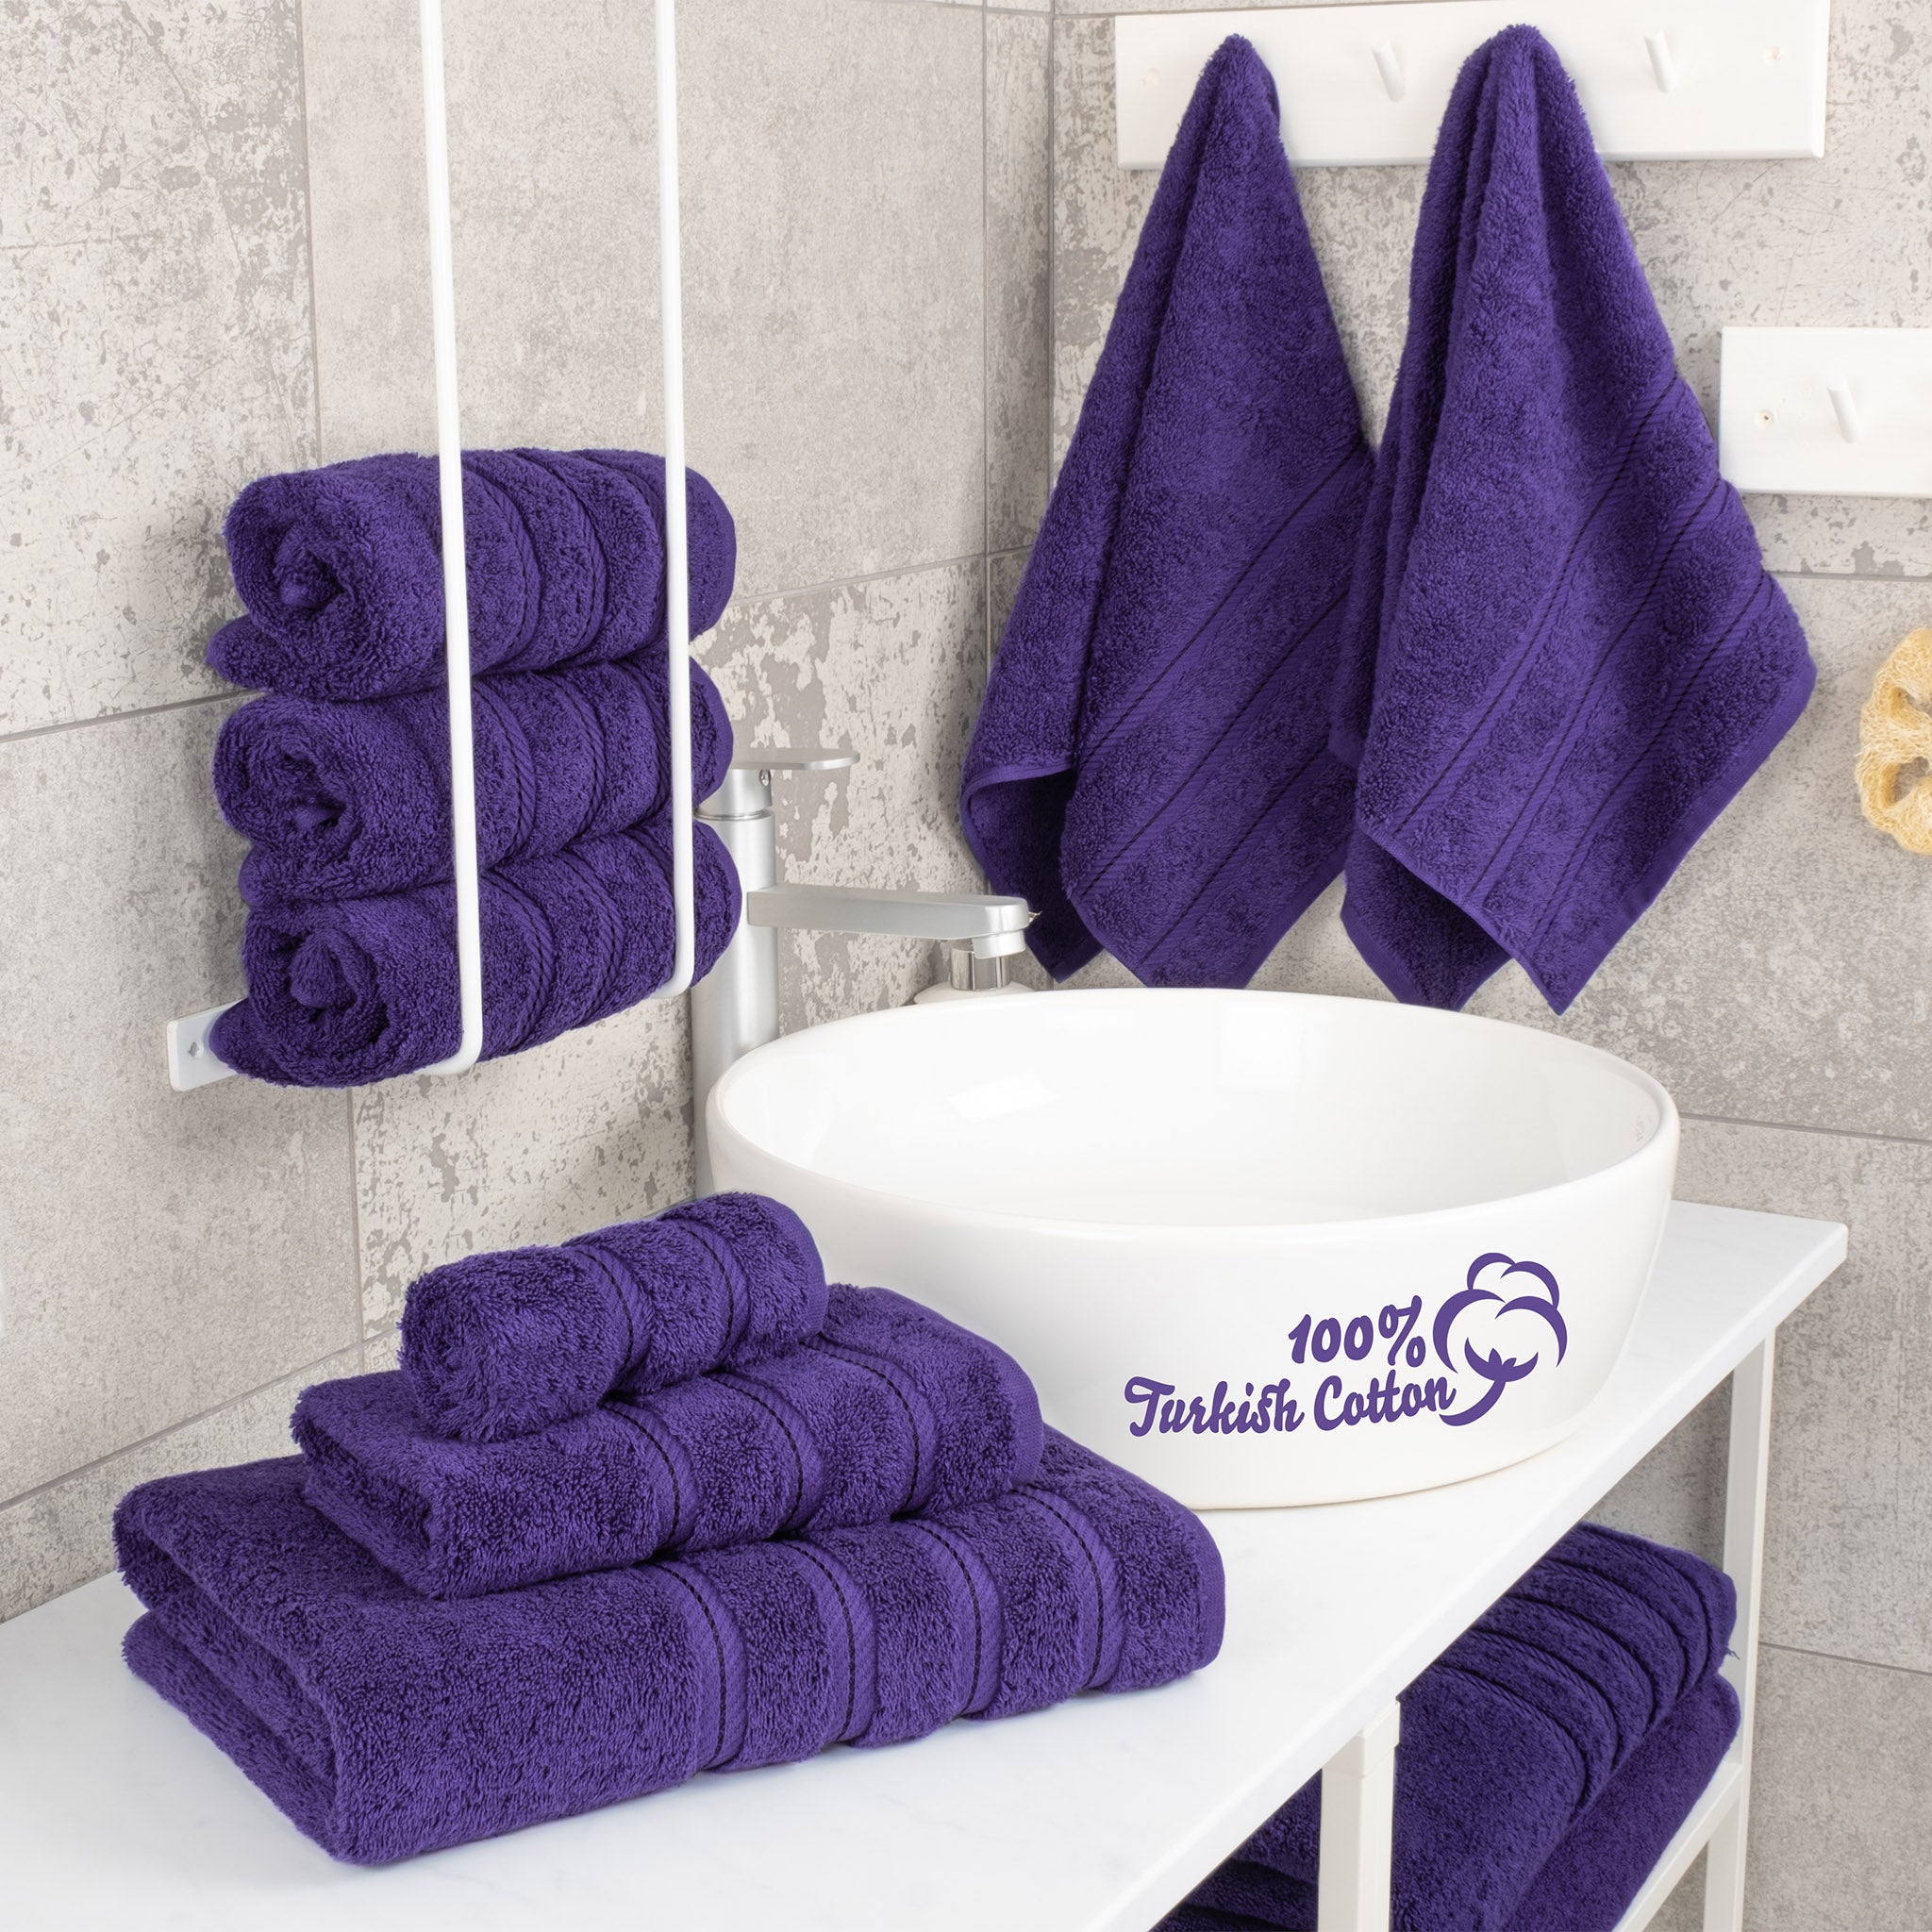 American Soft Linen 100% Turkish Cotton 6 Piece Towel Set Wholesale purple-2